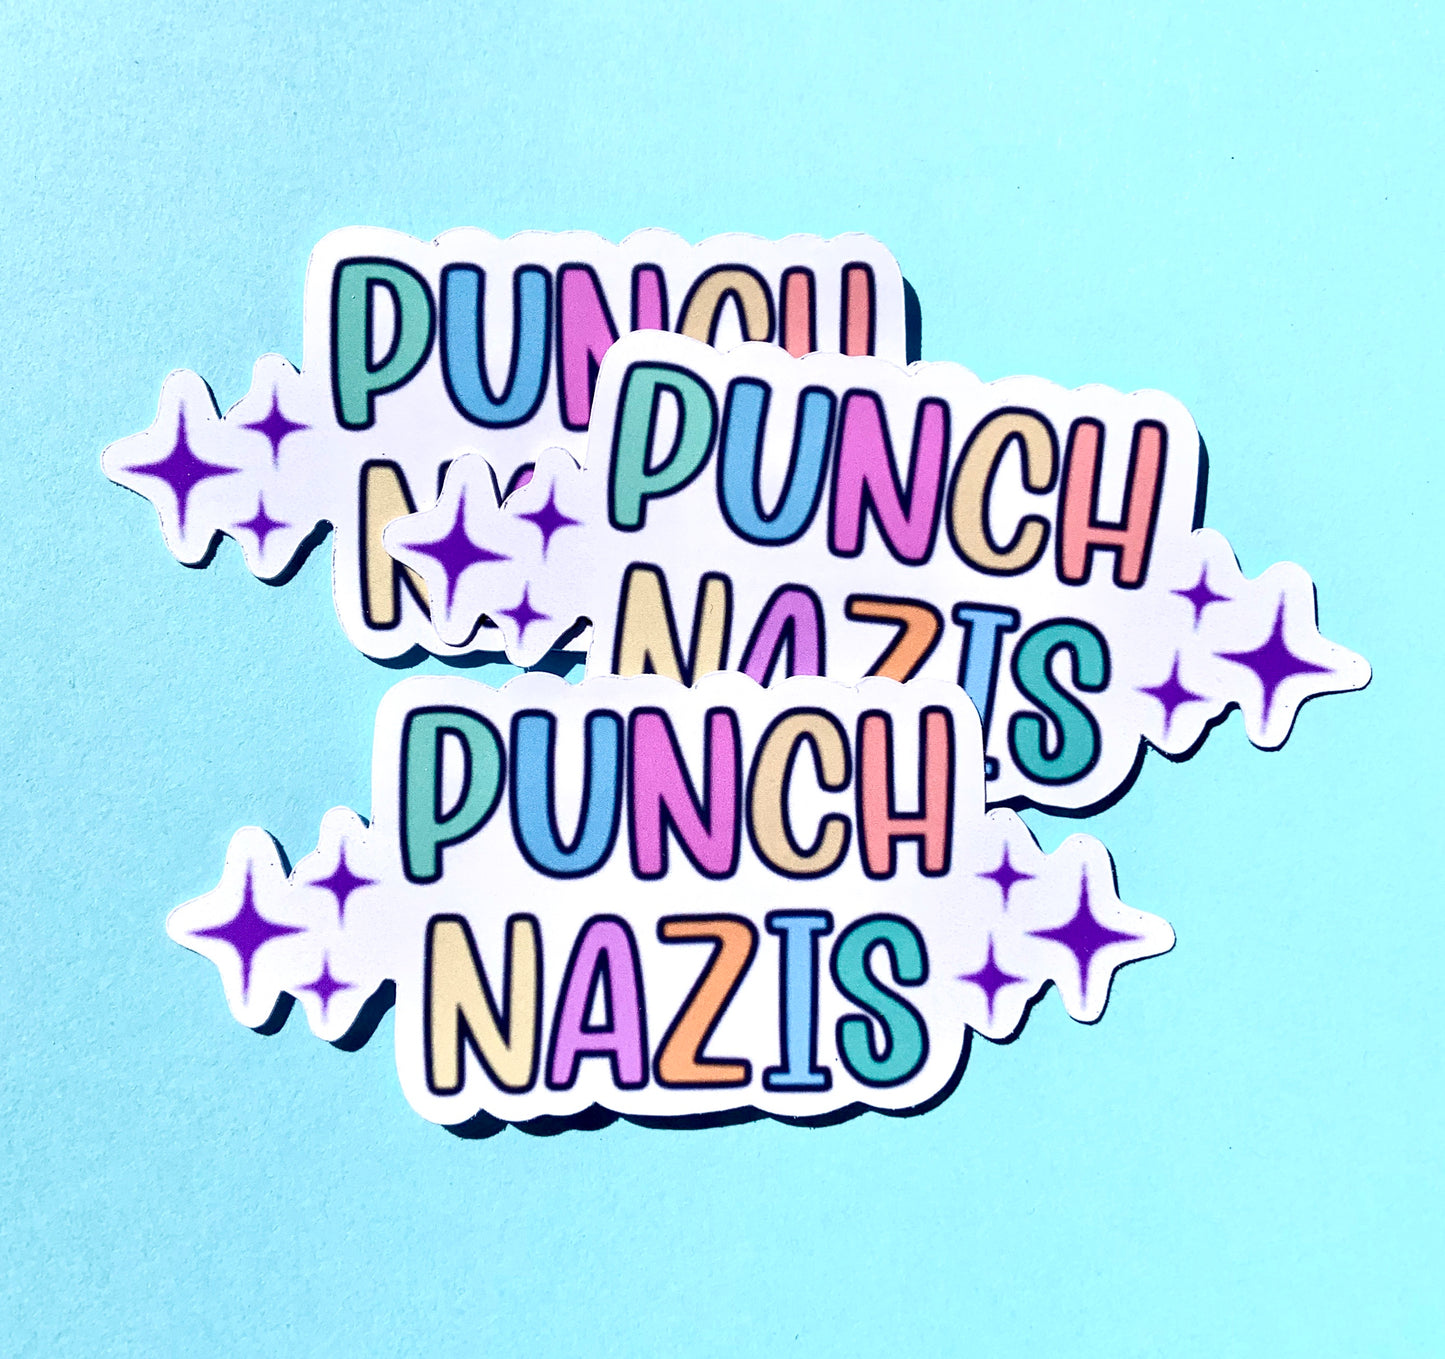 Punch Nazis